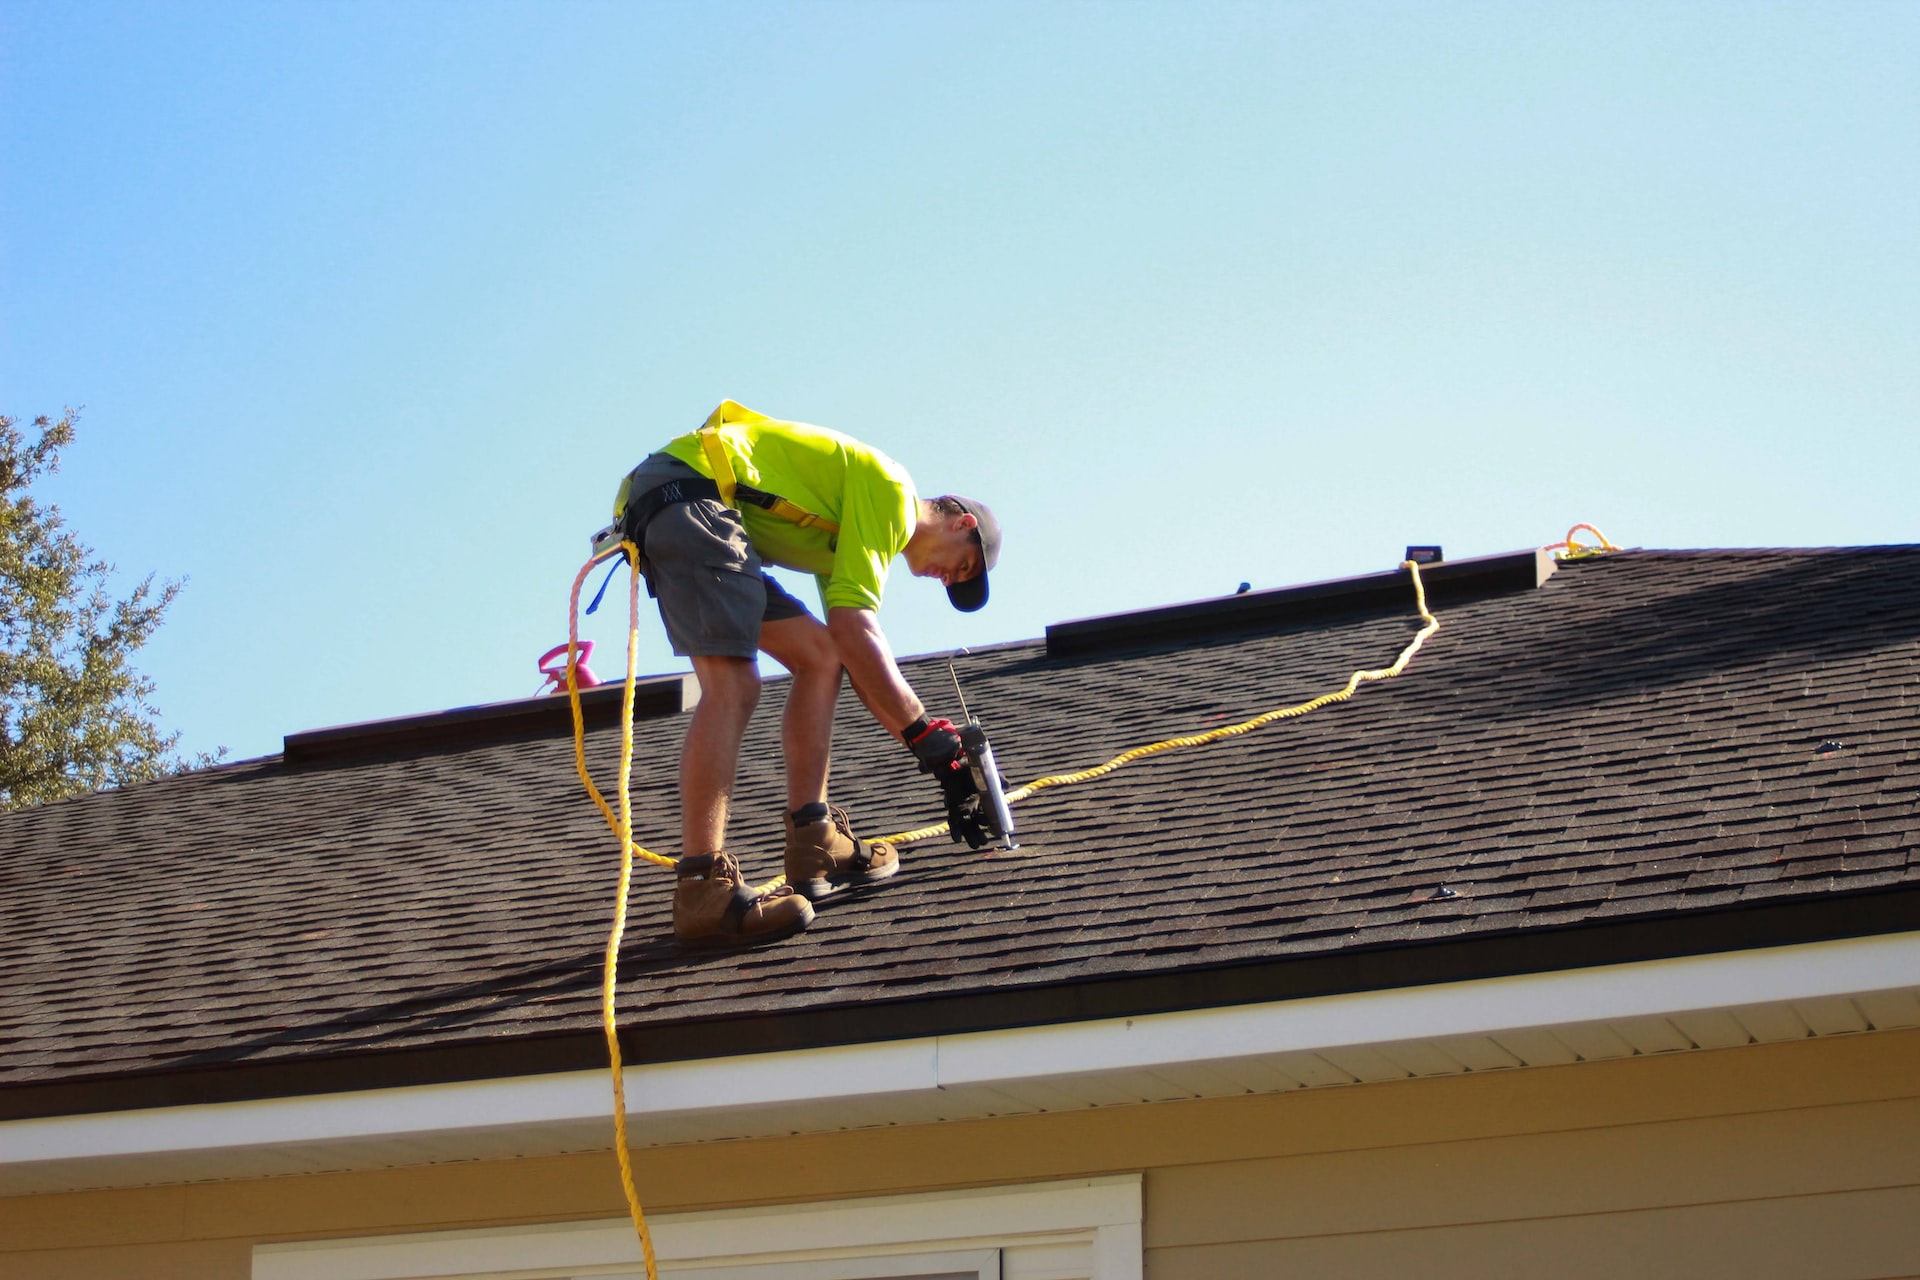 Why Immediate Roof Leak Repair is Important